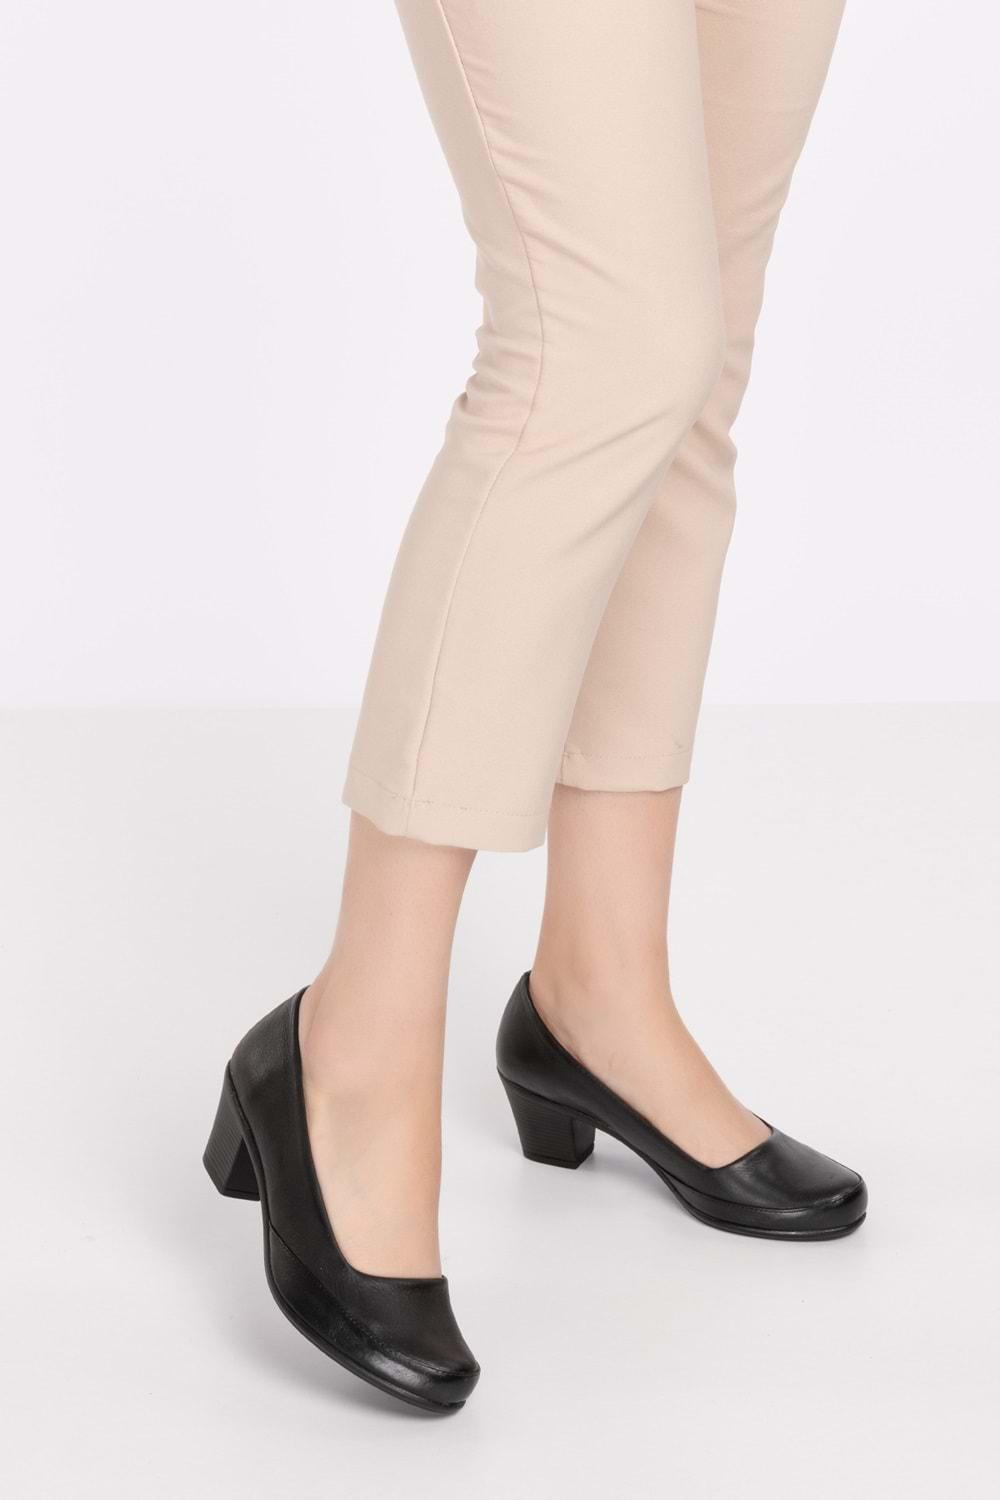 Gondol Kadın Hakiki Deri Klasik Topuklu Ayakkabı vdt.8080 - Siyah - 35